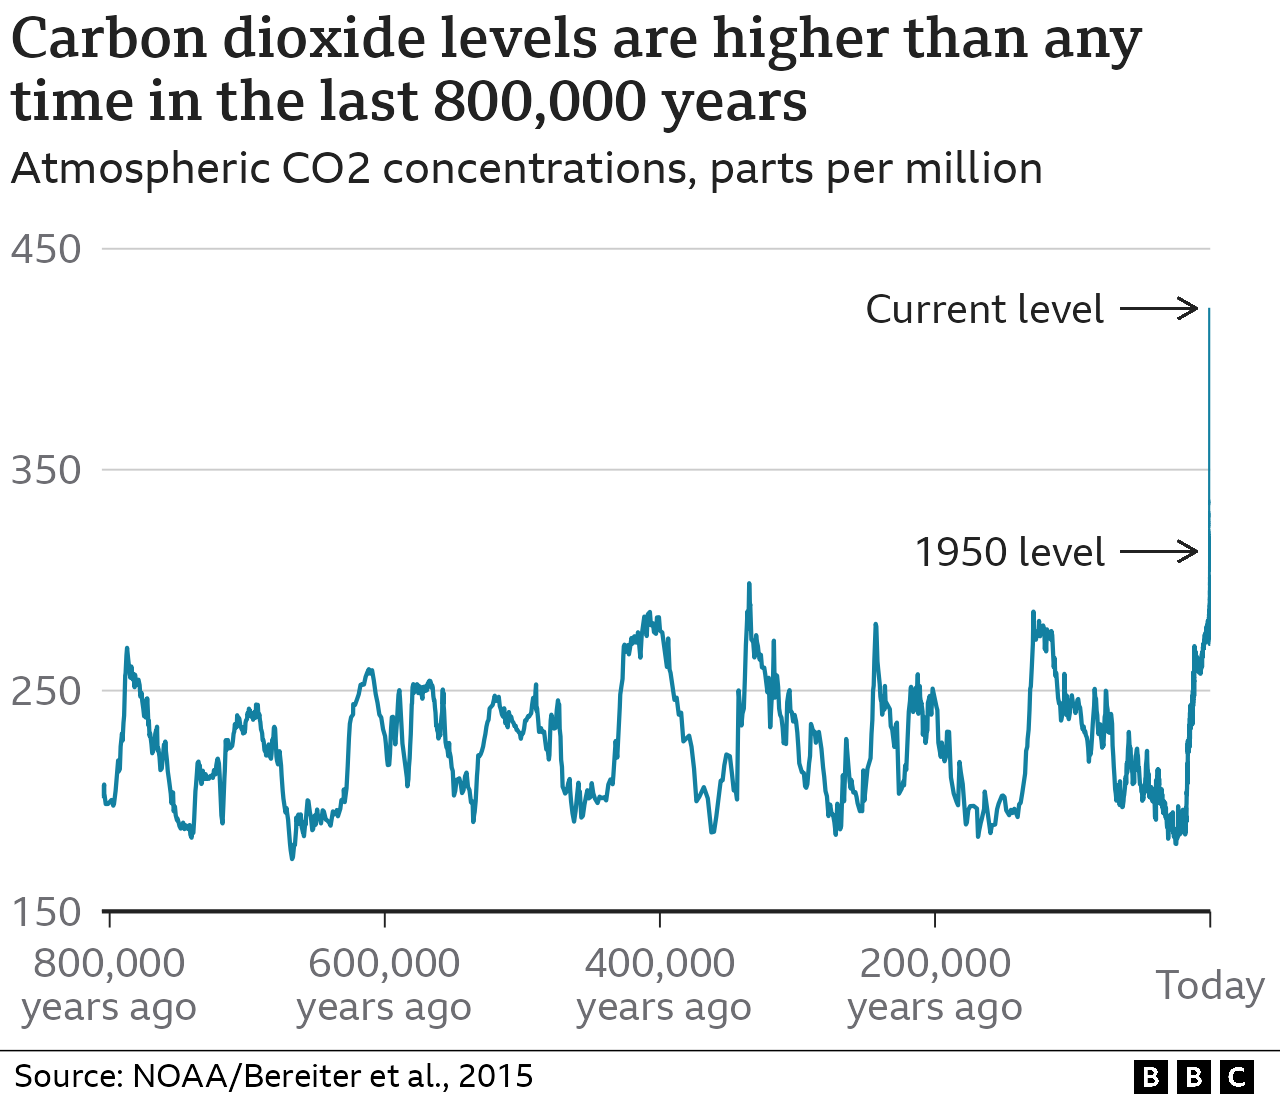 In den letzten 800.000 Jahren schwankte die CO2-Konzentration in der Atmosphäre sägezahnartig zwischen etwa 180 und 300 Teilen pro Million. Heute liegt der CO2-Gehalt bei über 420 Teilen pro Million und ist im letzten Jahrhundert stark angestiegen - eine fast senkrechte Linie im Diagramm.